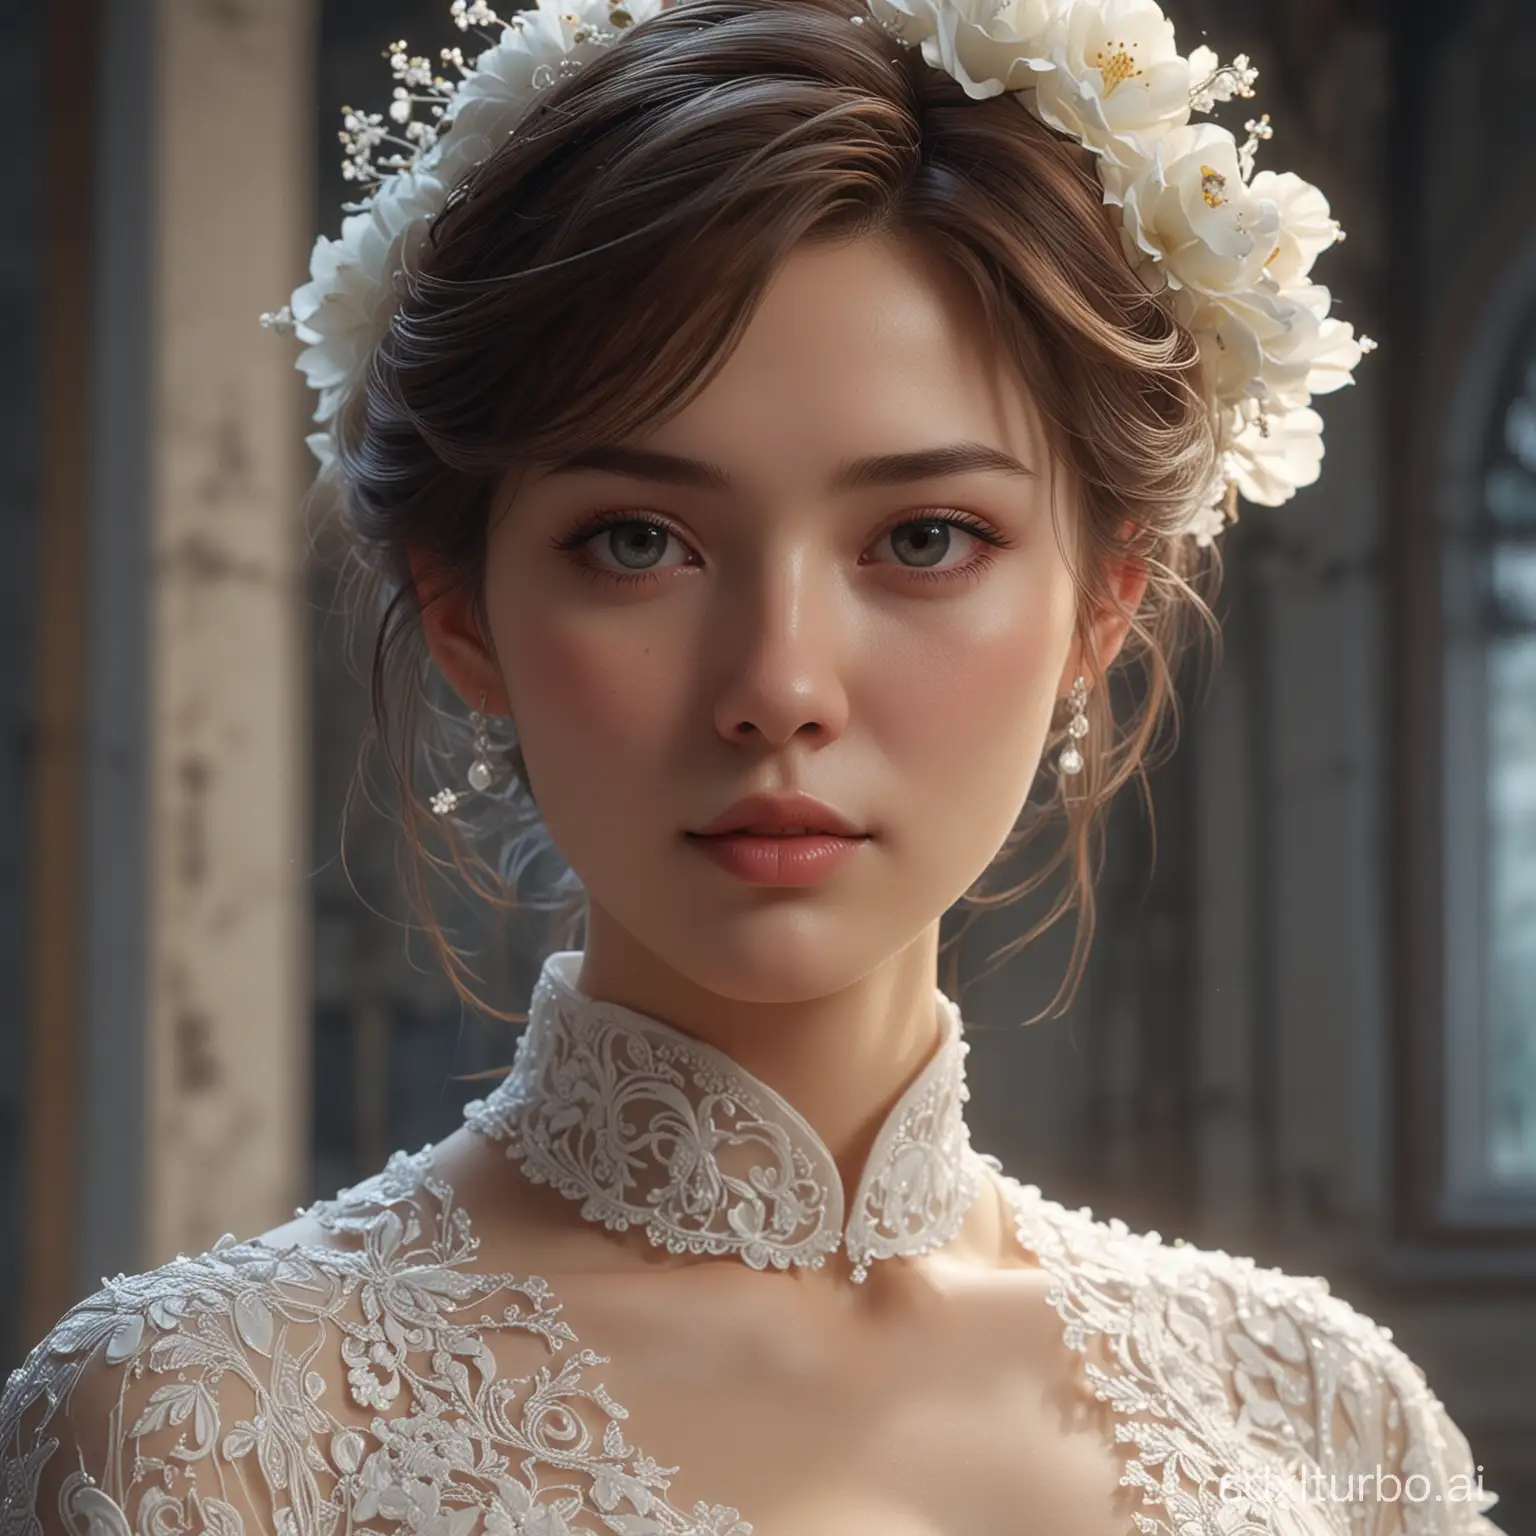 Exquisite-Bride-in-Closeup-Portrait-at-Church-Wedding